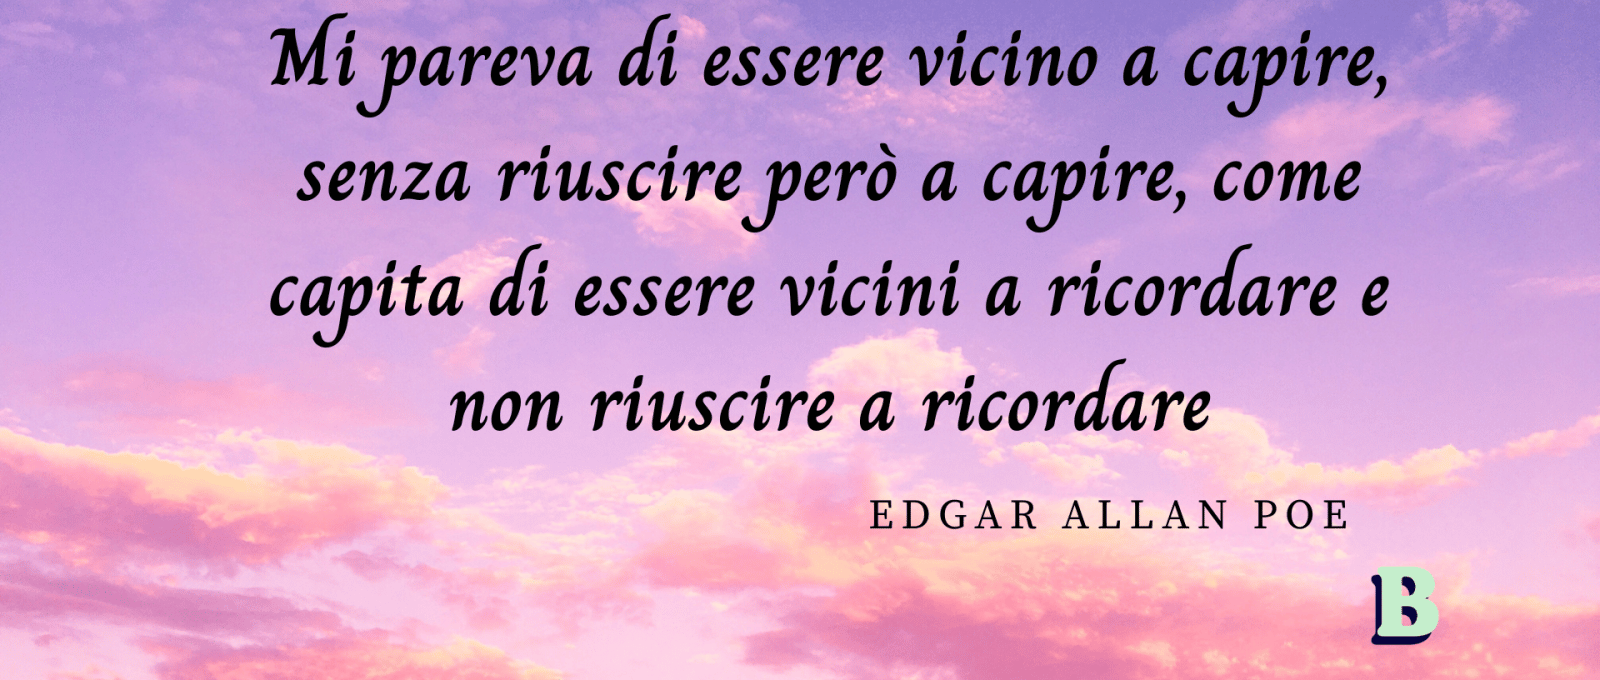 frasi Edgar Allan Poe